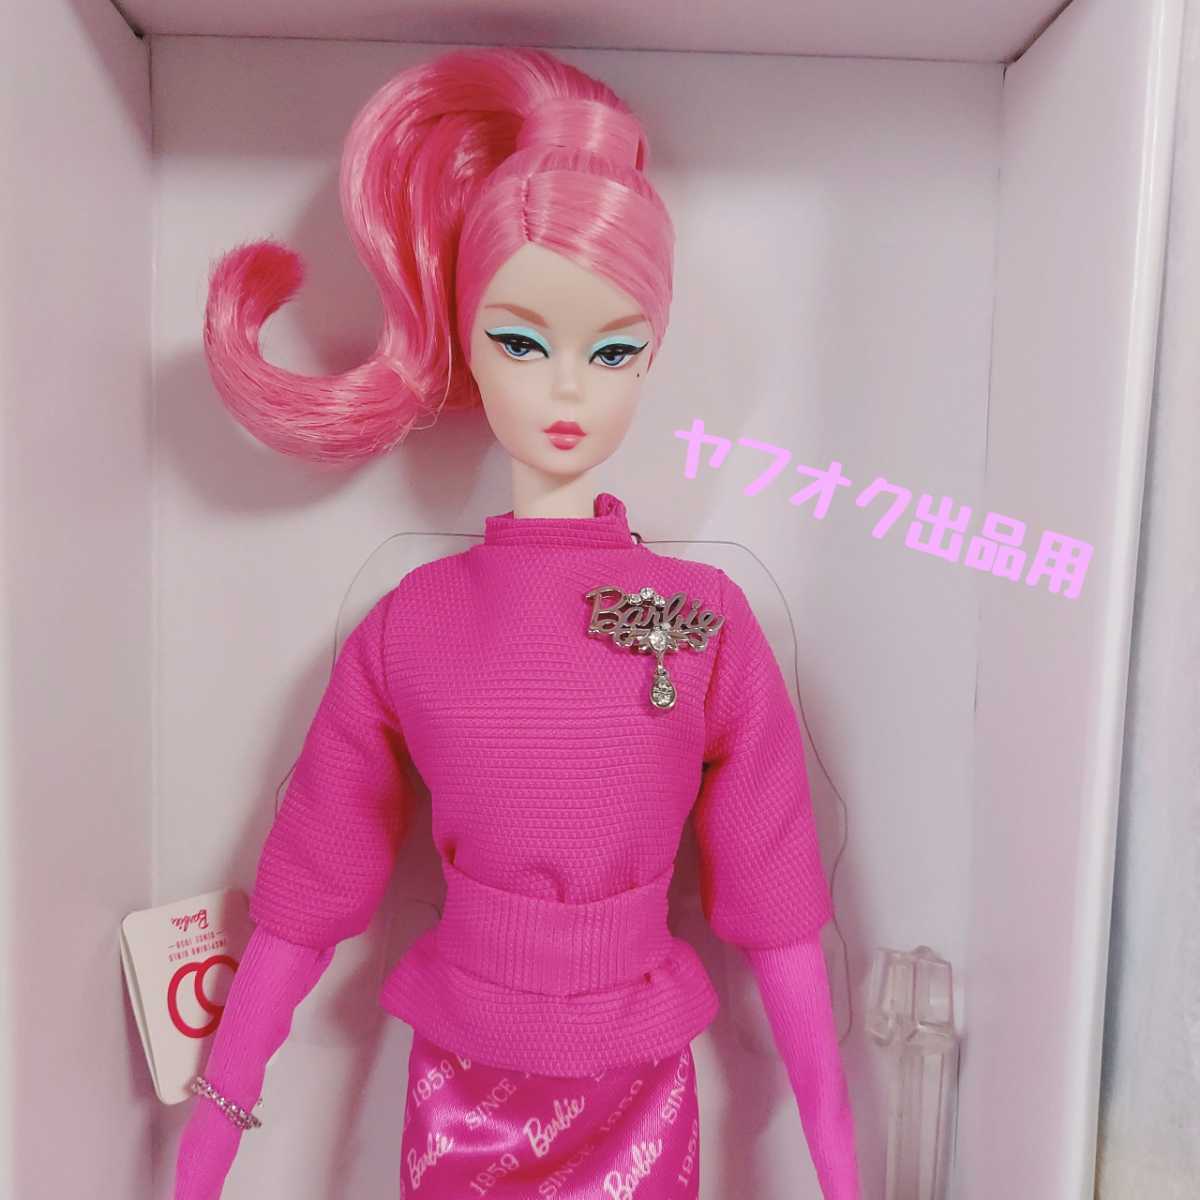 優先配送 可動ボディ シルクストーン バービー ファッション・モデル・コレクション - おもちゃ⁄人形